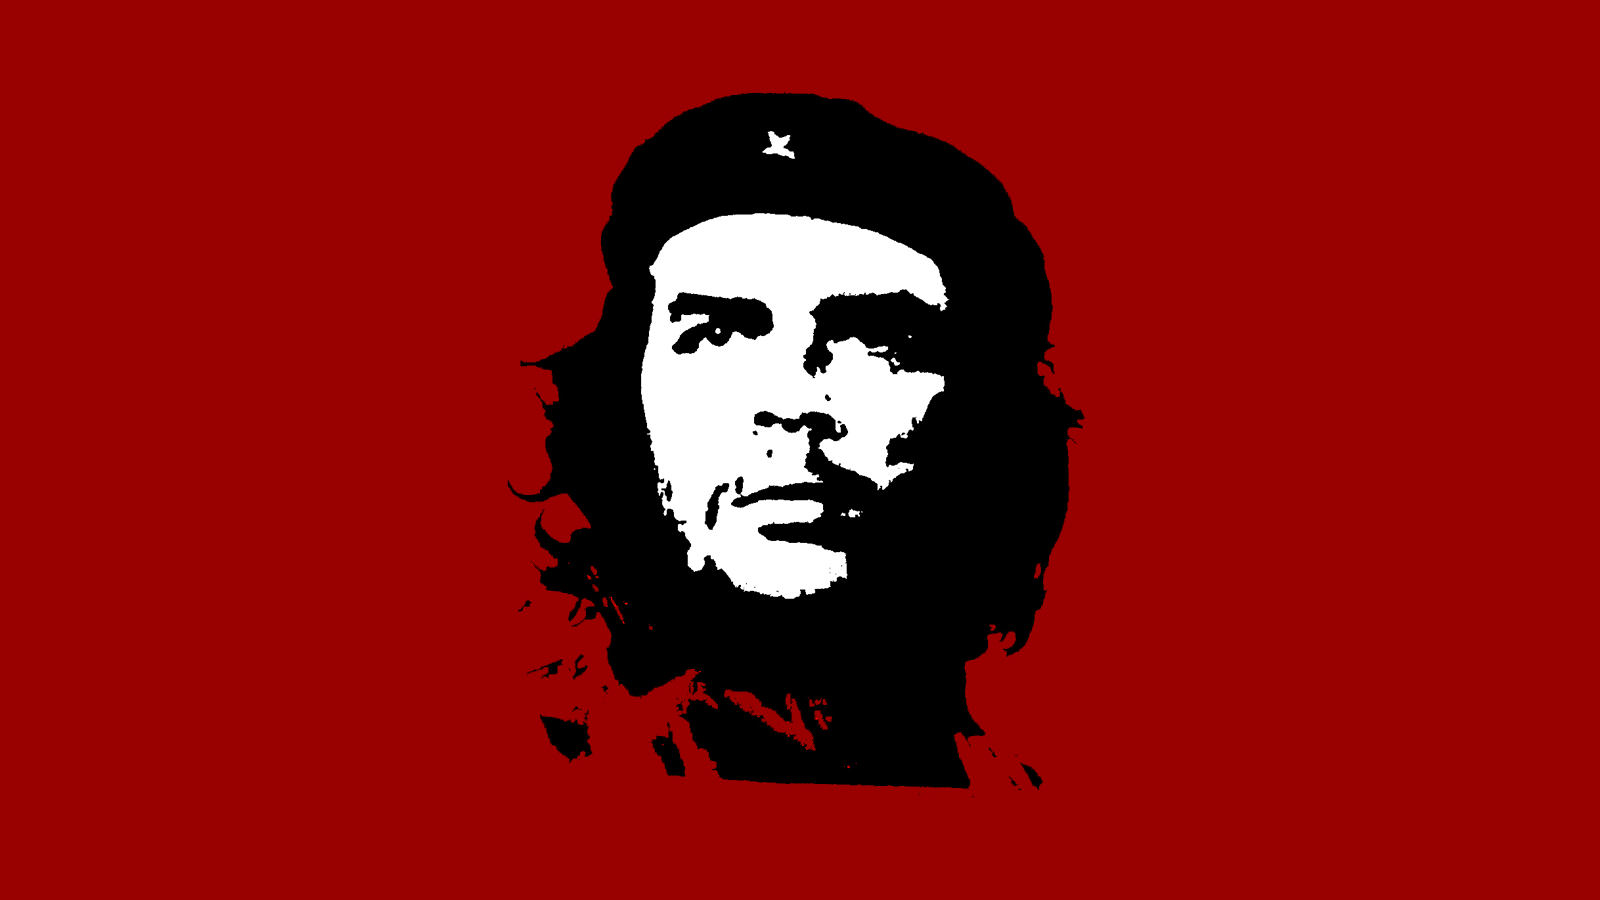 15 Quotes by Fidel Castro and Ernesto Che Guevara